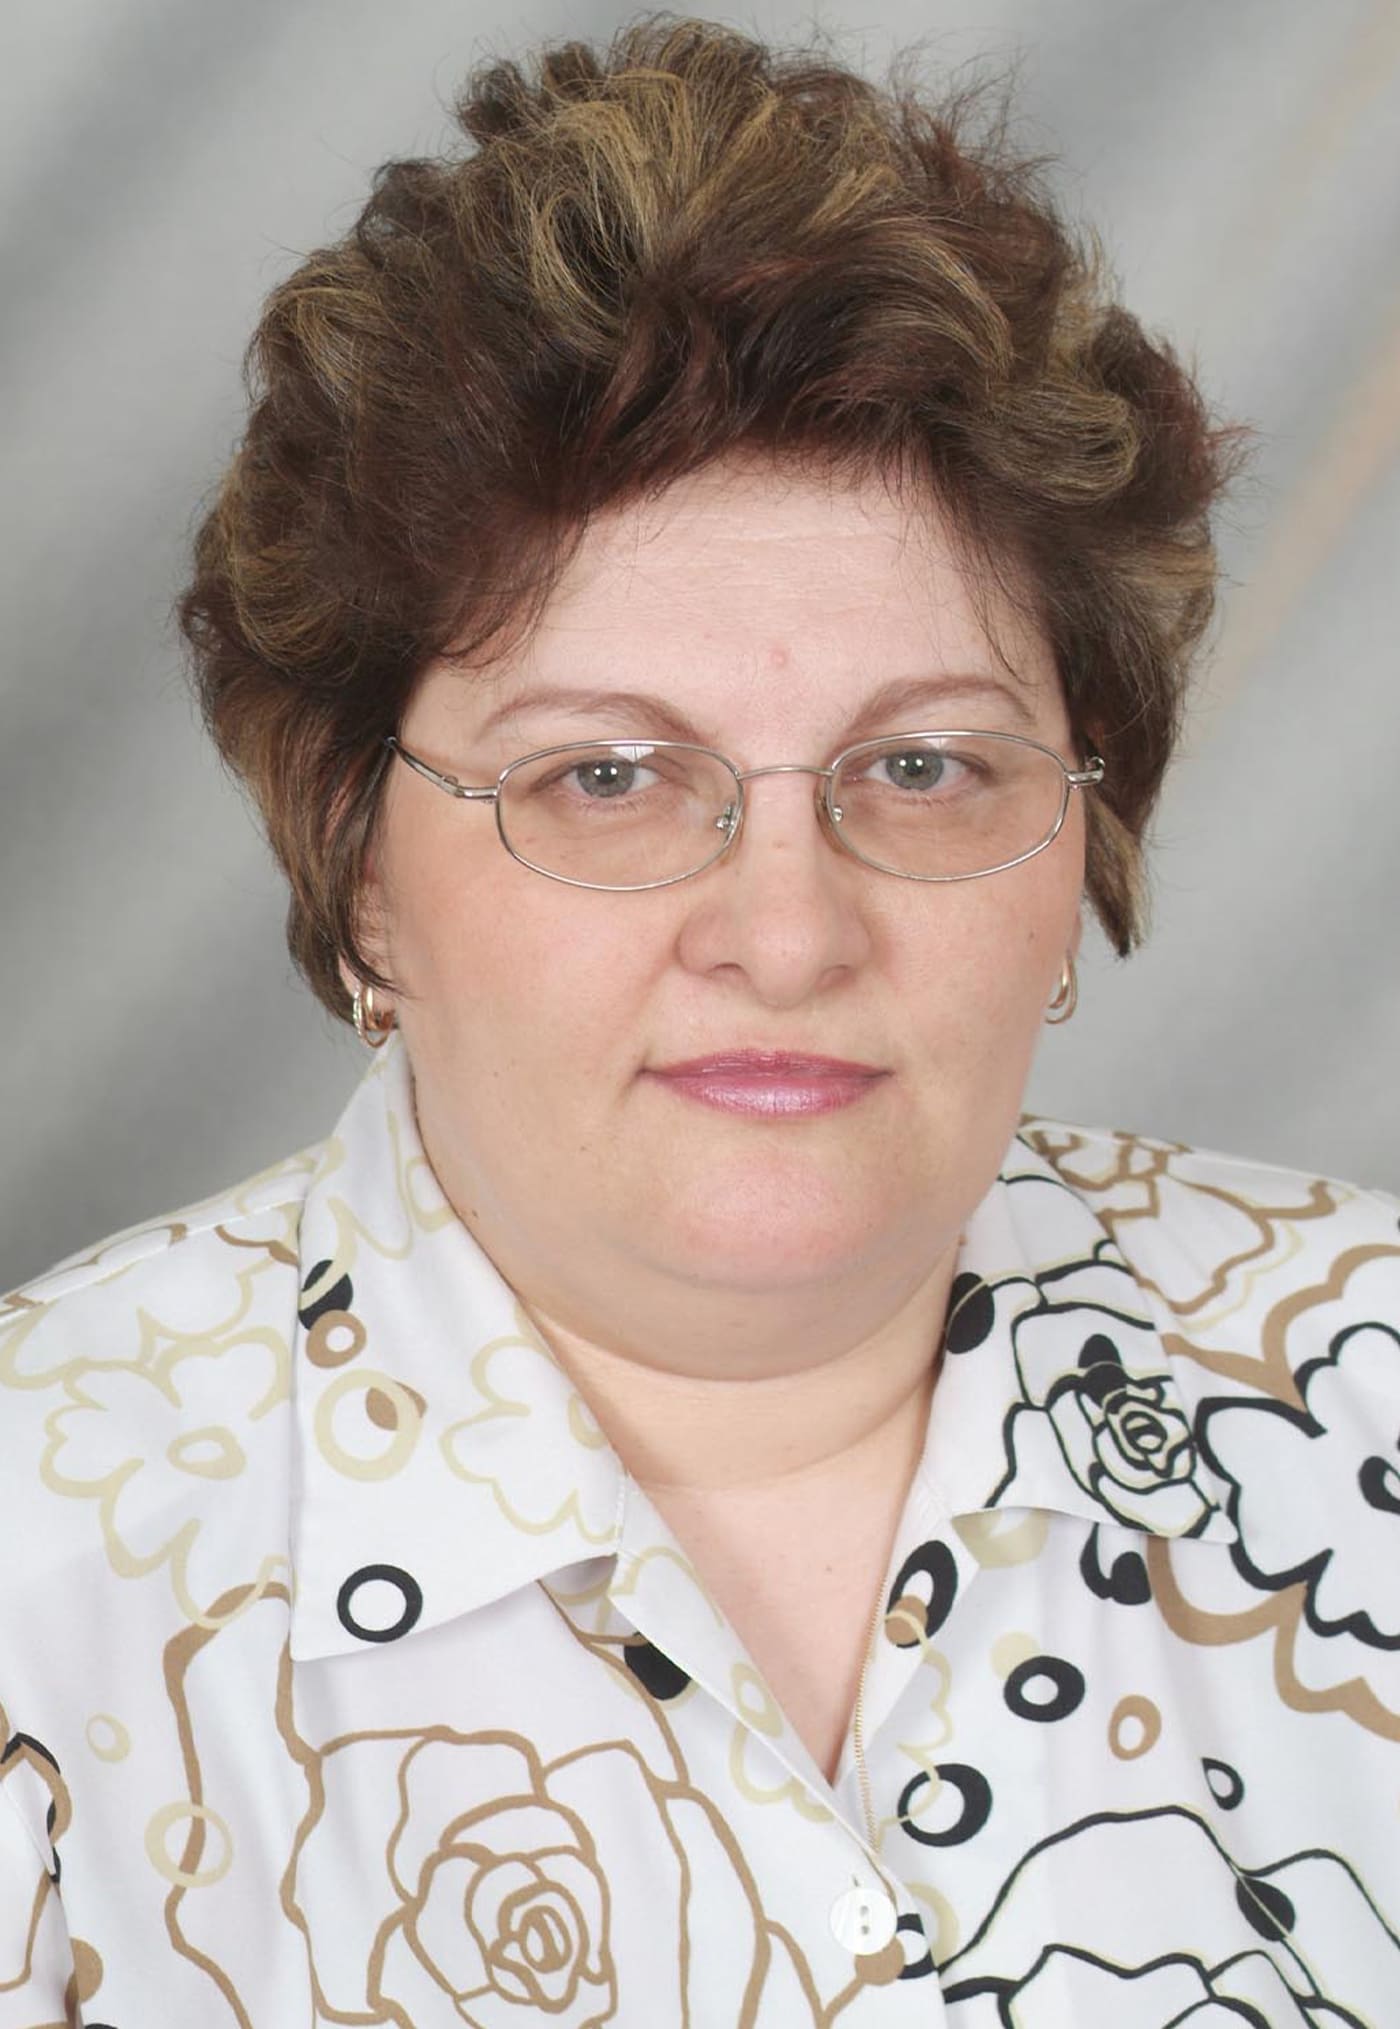 Серова Ирина Викторовна- учитель информатики